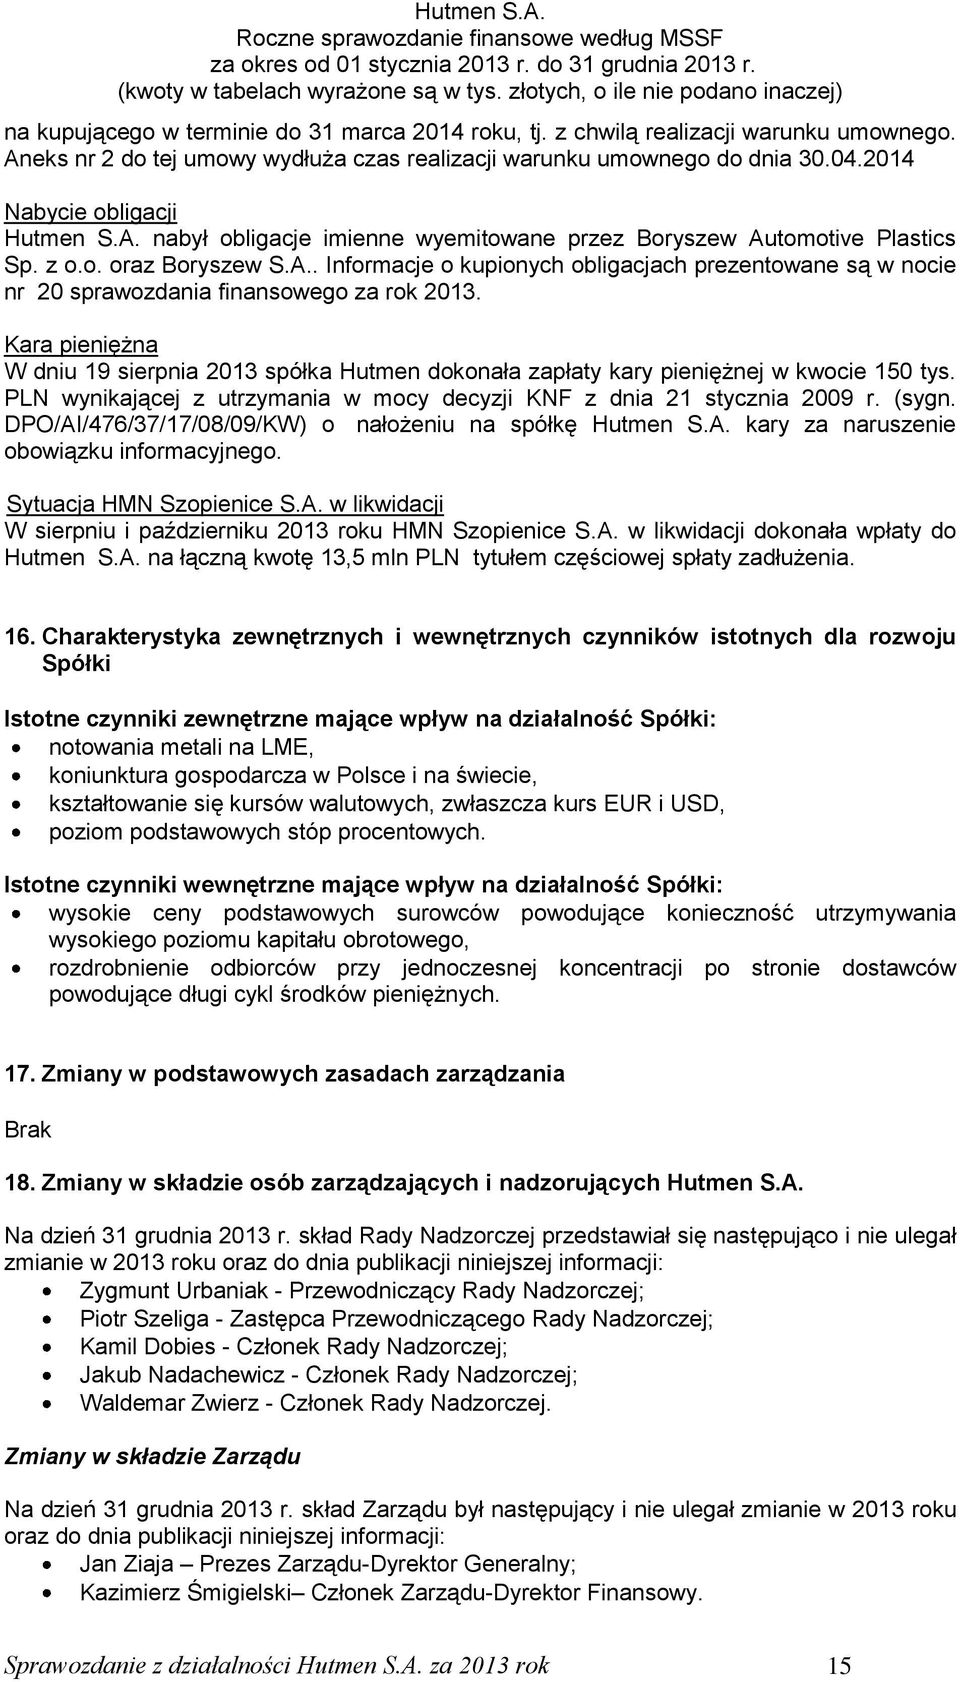 Kara pieniężna W dniu 19 sierpnia 2013 spółka Hutmen dokonała zapłaty kary pieniężnej w kwocie 150 tys. PLN wynikającej z utrzymania w mocy decyzji KNF z dnia 21 stycznia 2009 r. (sygn.